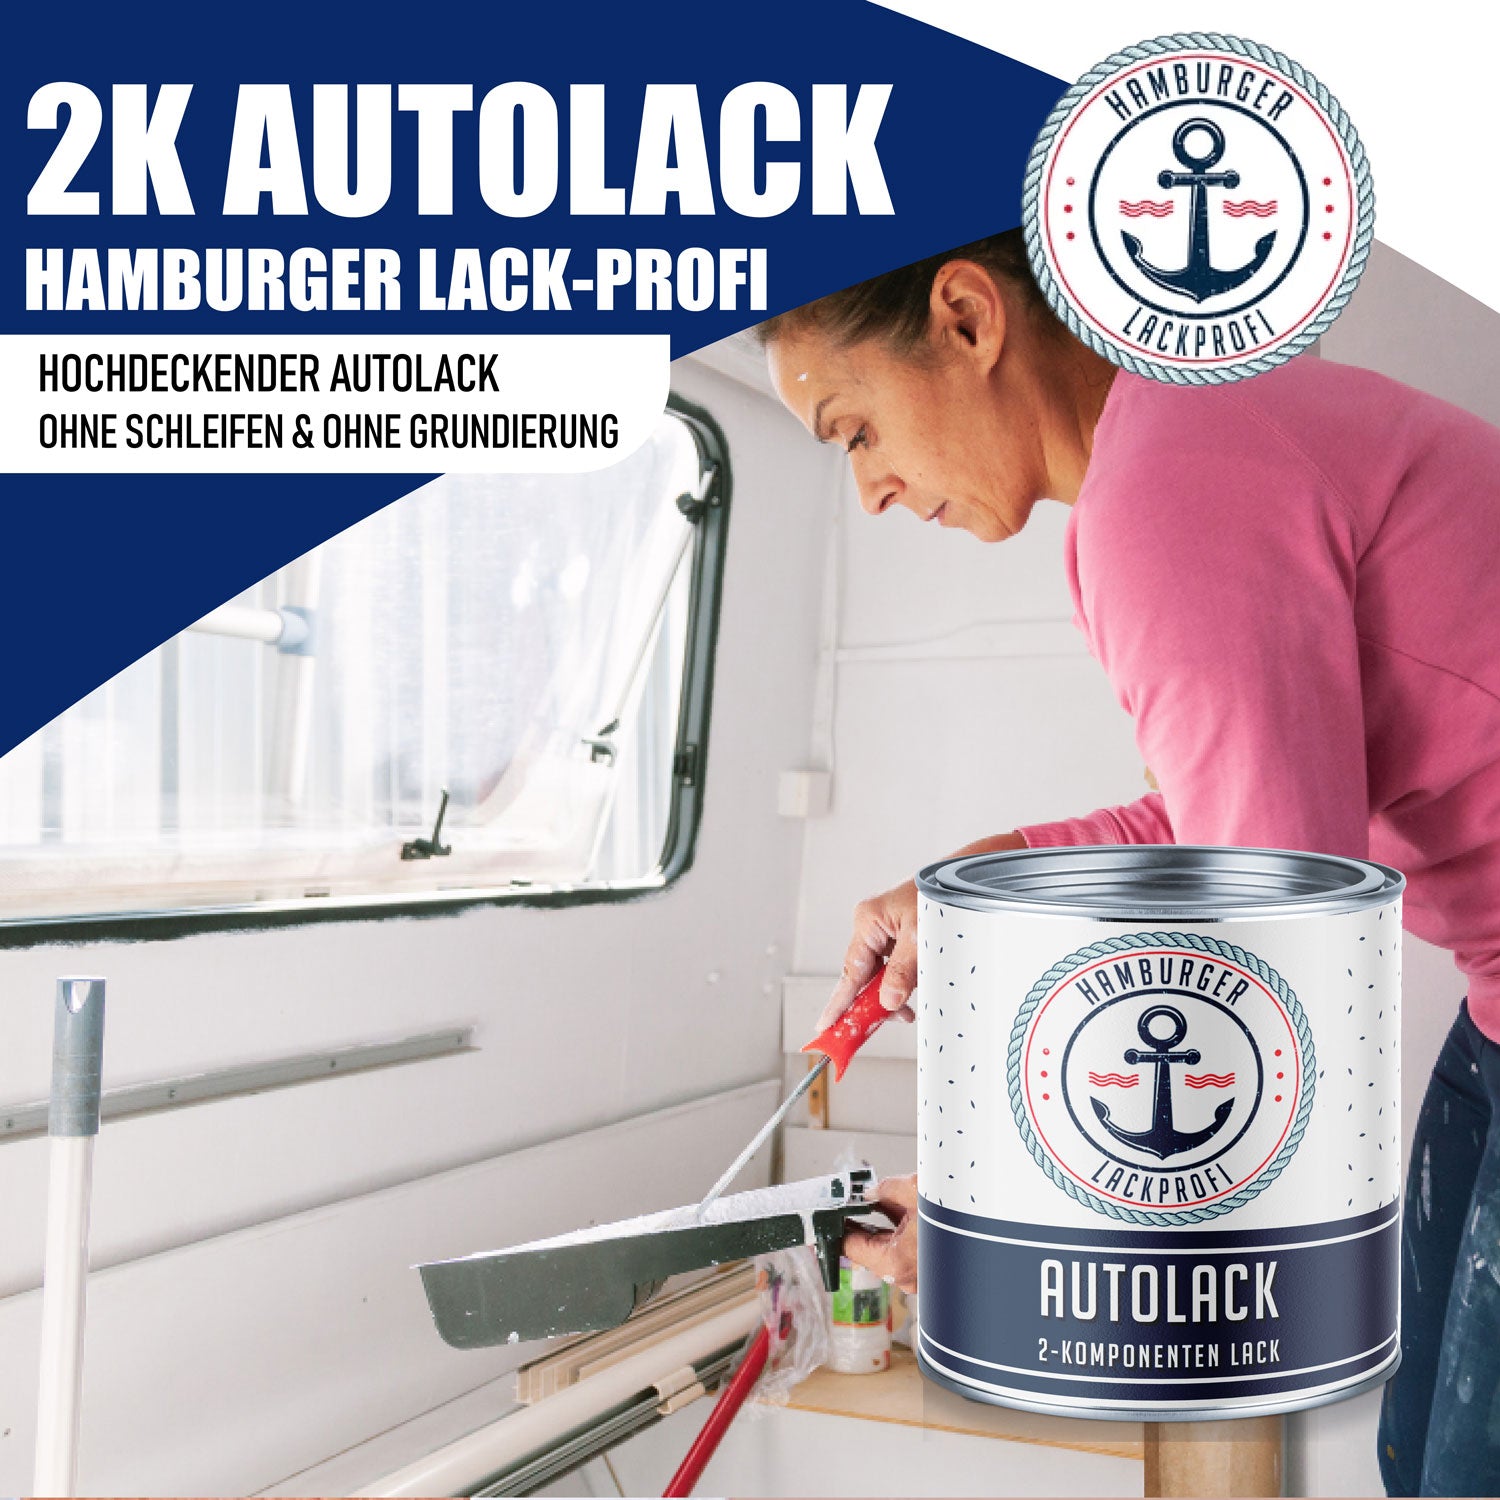 Hamburger Lack-Profi 2K Autolack in Azurblau RAL 5009 mit Lackierset (X300) & Verdünnung (1 L) - 30% Sparangebot